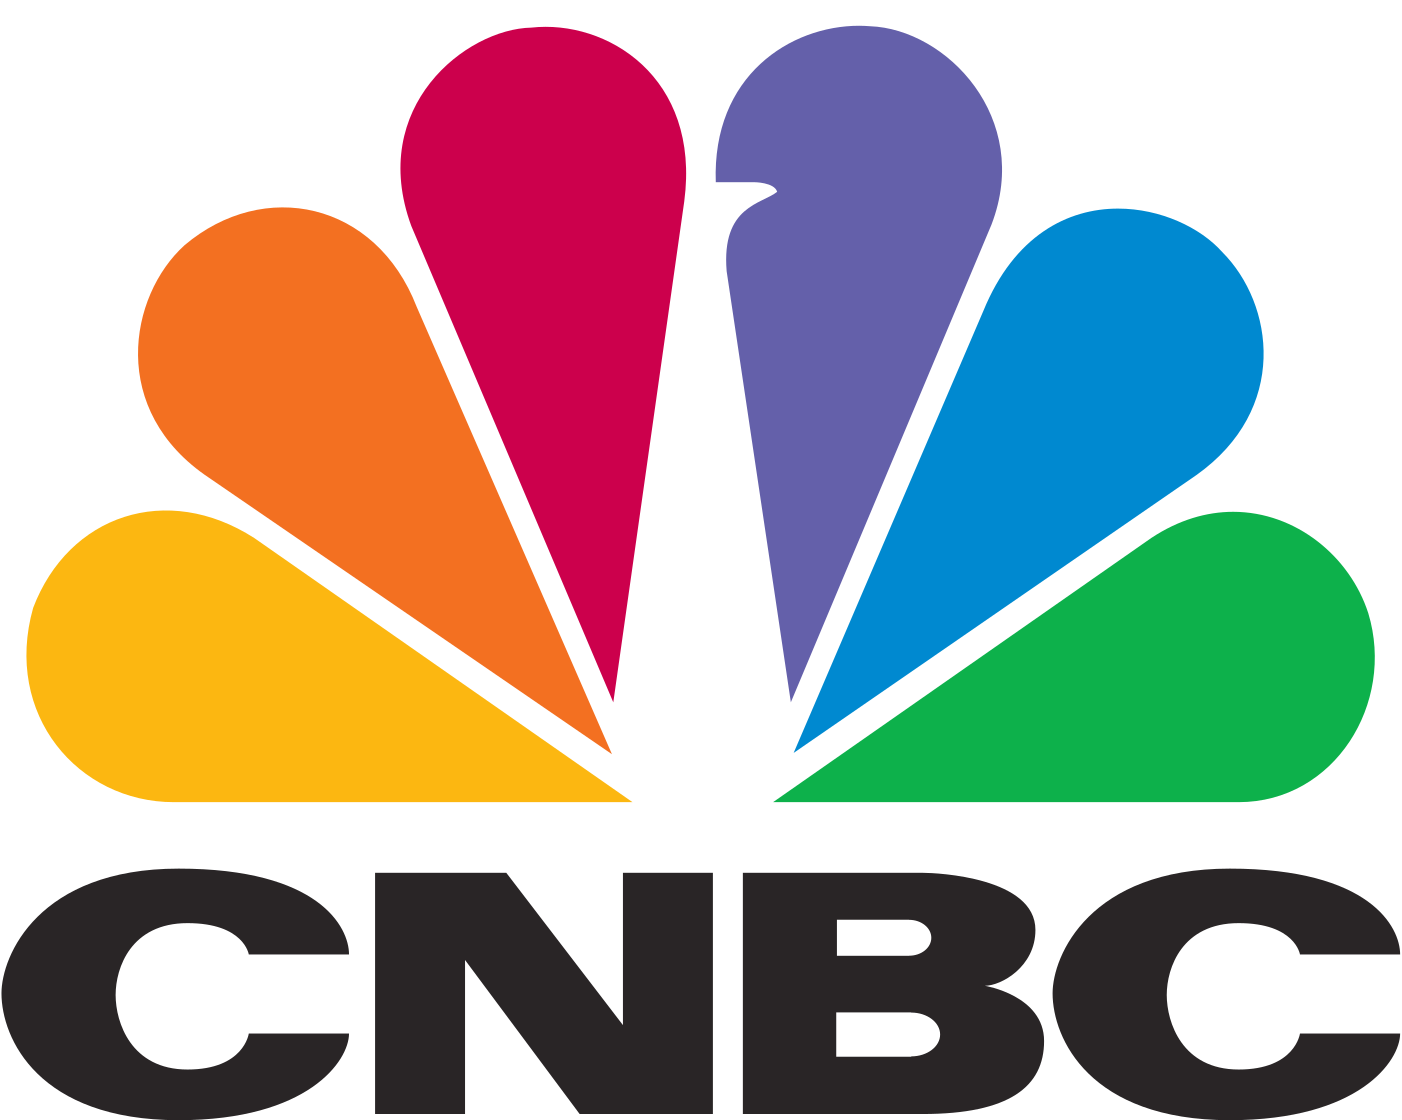 1402px-CNBC_logo.svg.png